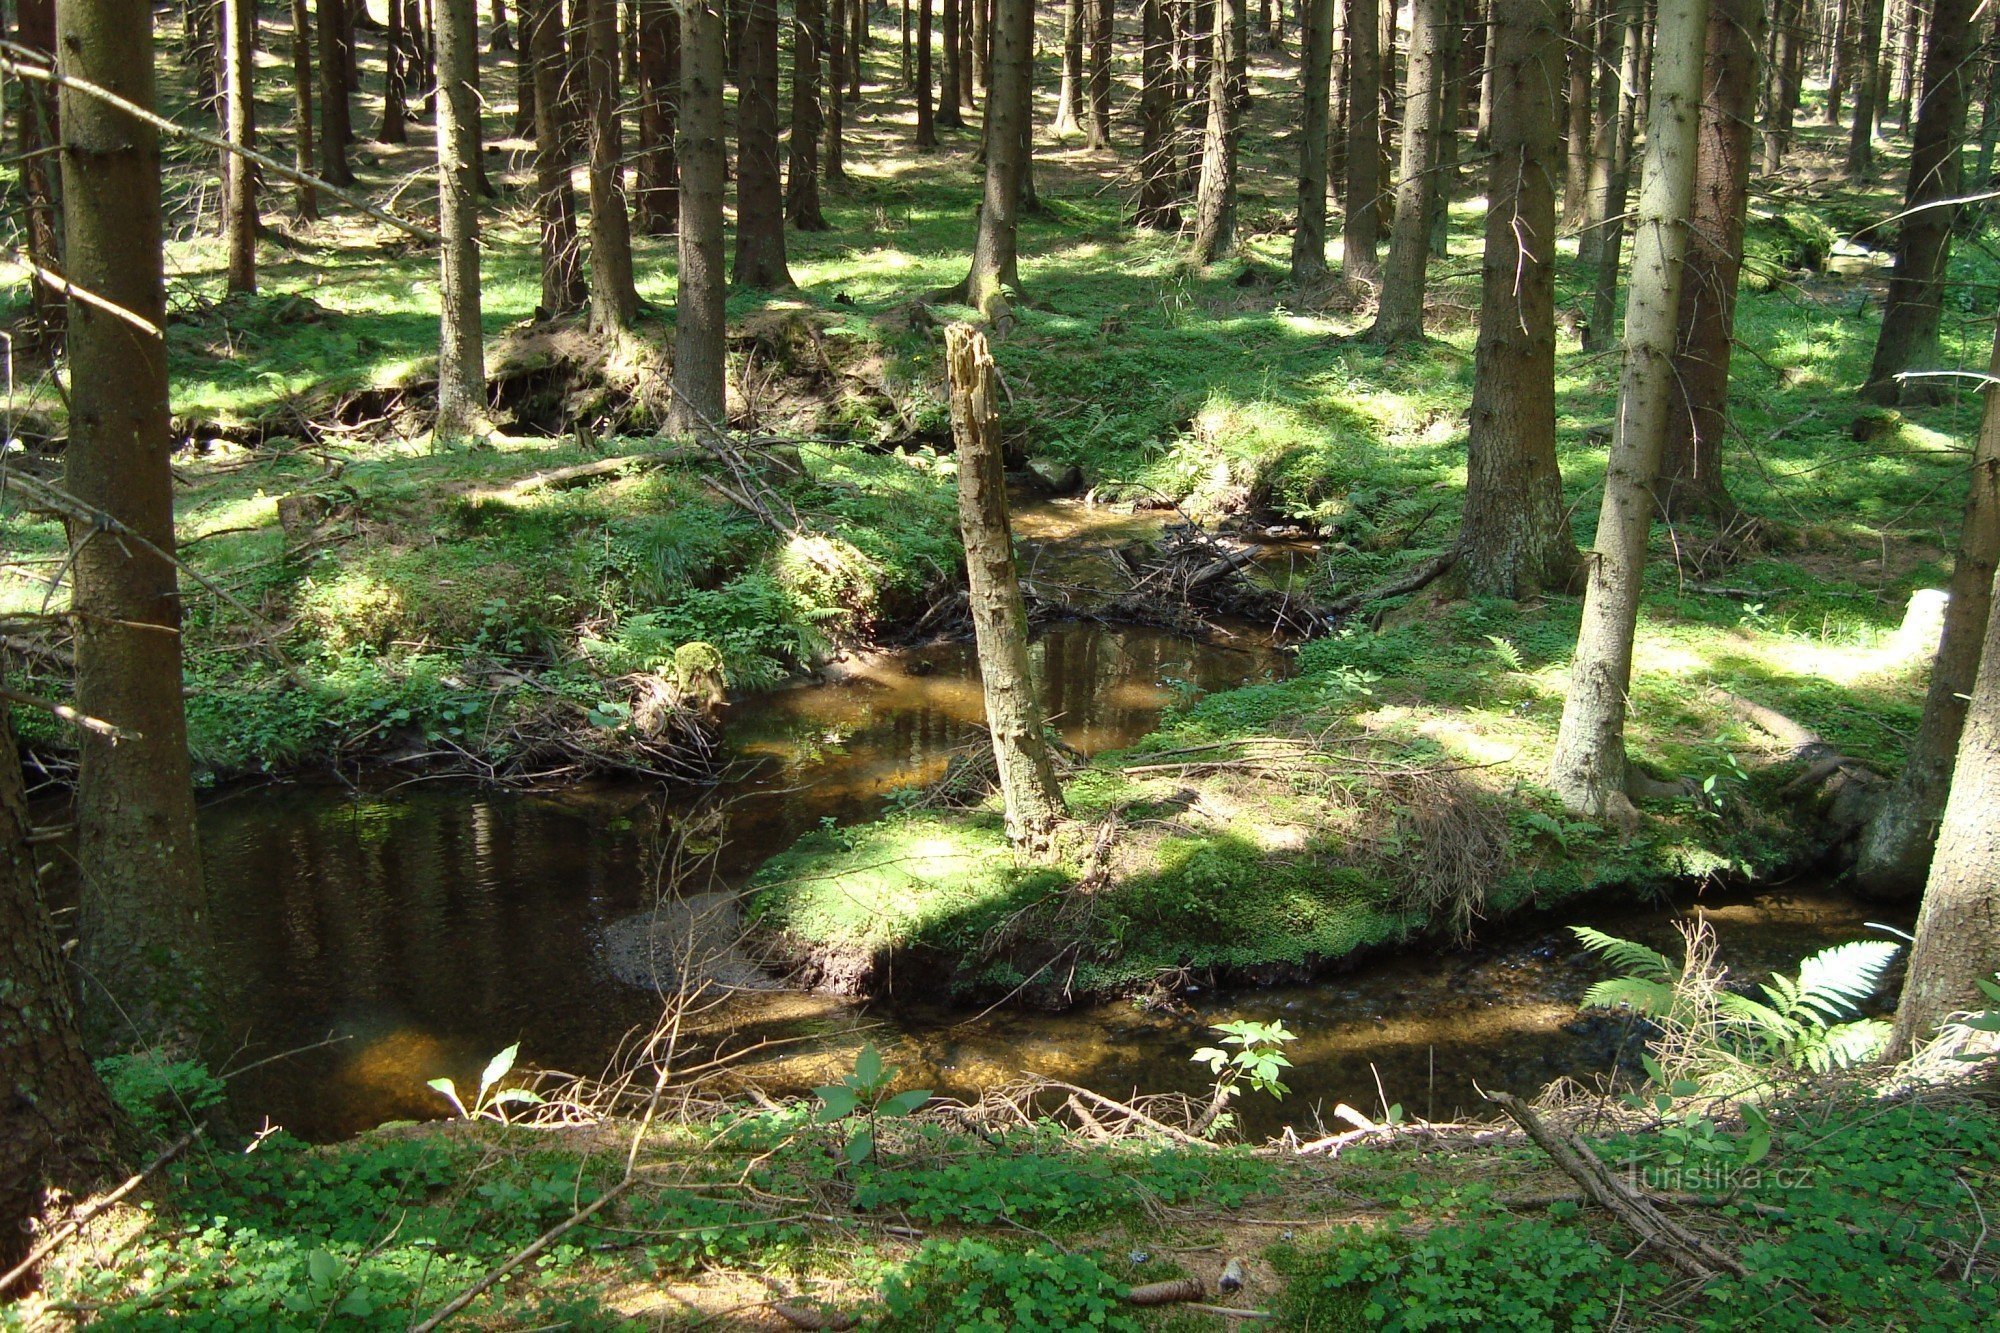 Huťský potok - un monumento naturale